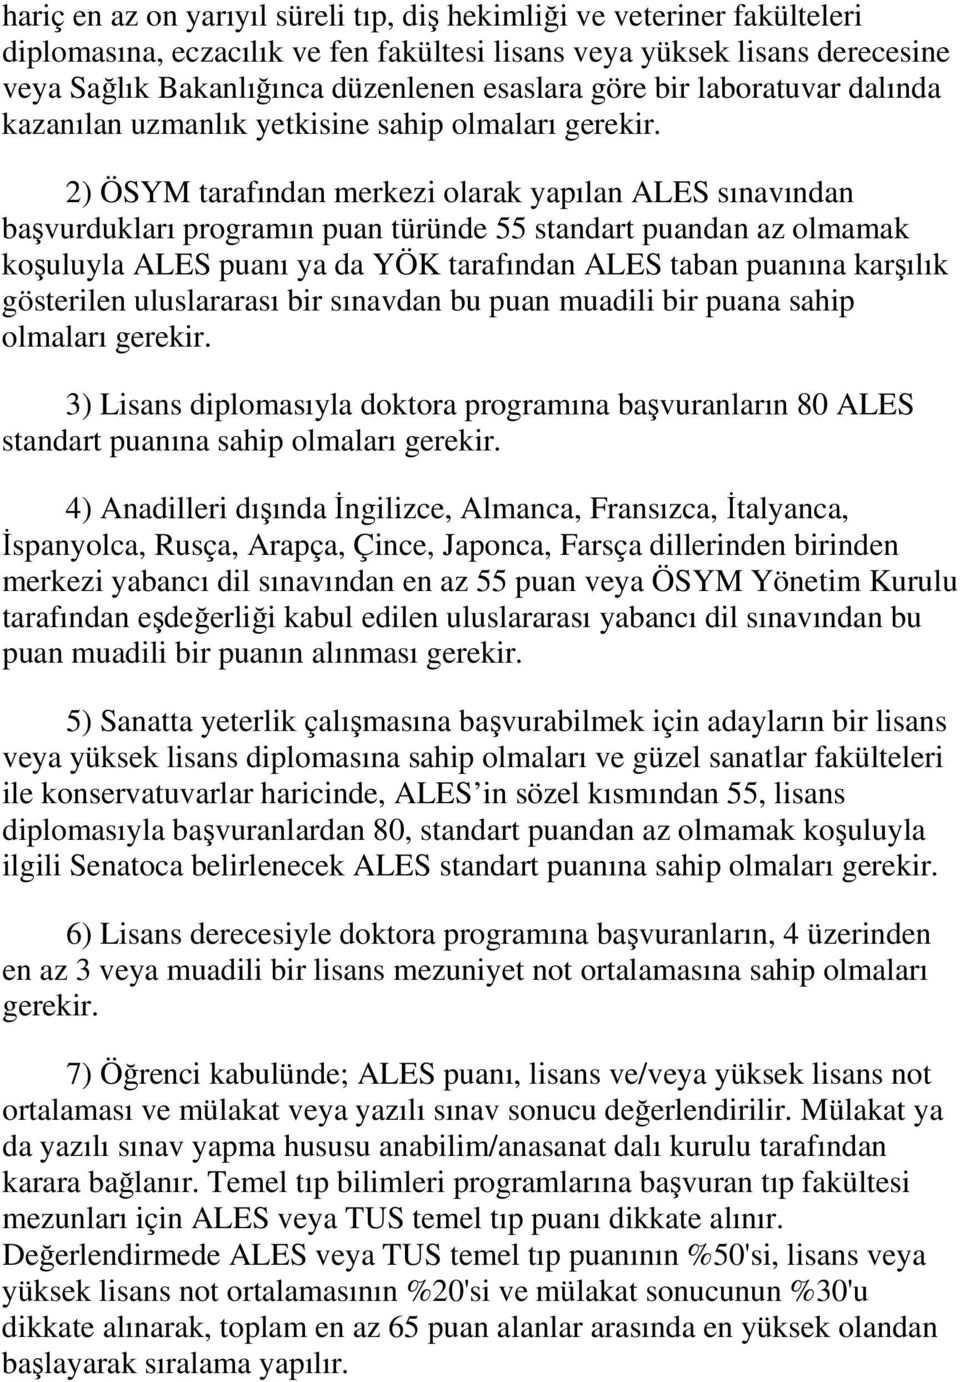 2) ÖSYM tarafından merkezi olarak yapılan ALES sınavından başvurdukları programın puan türünde 55 standart puandan az olmamak koşuluyla ALES puanı ya da YÖK tarafından ALES taban puanına karşılık